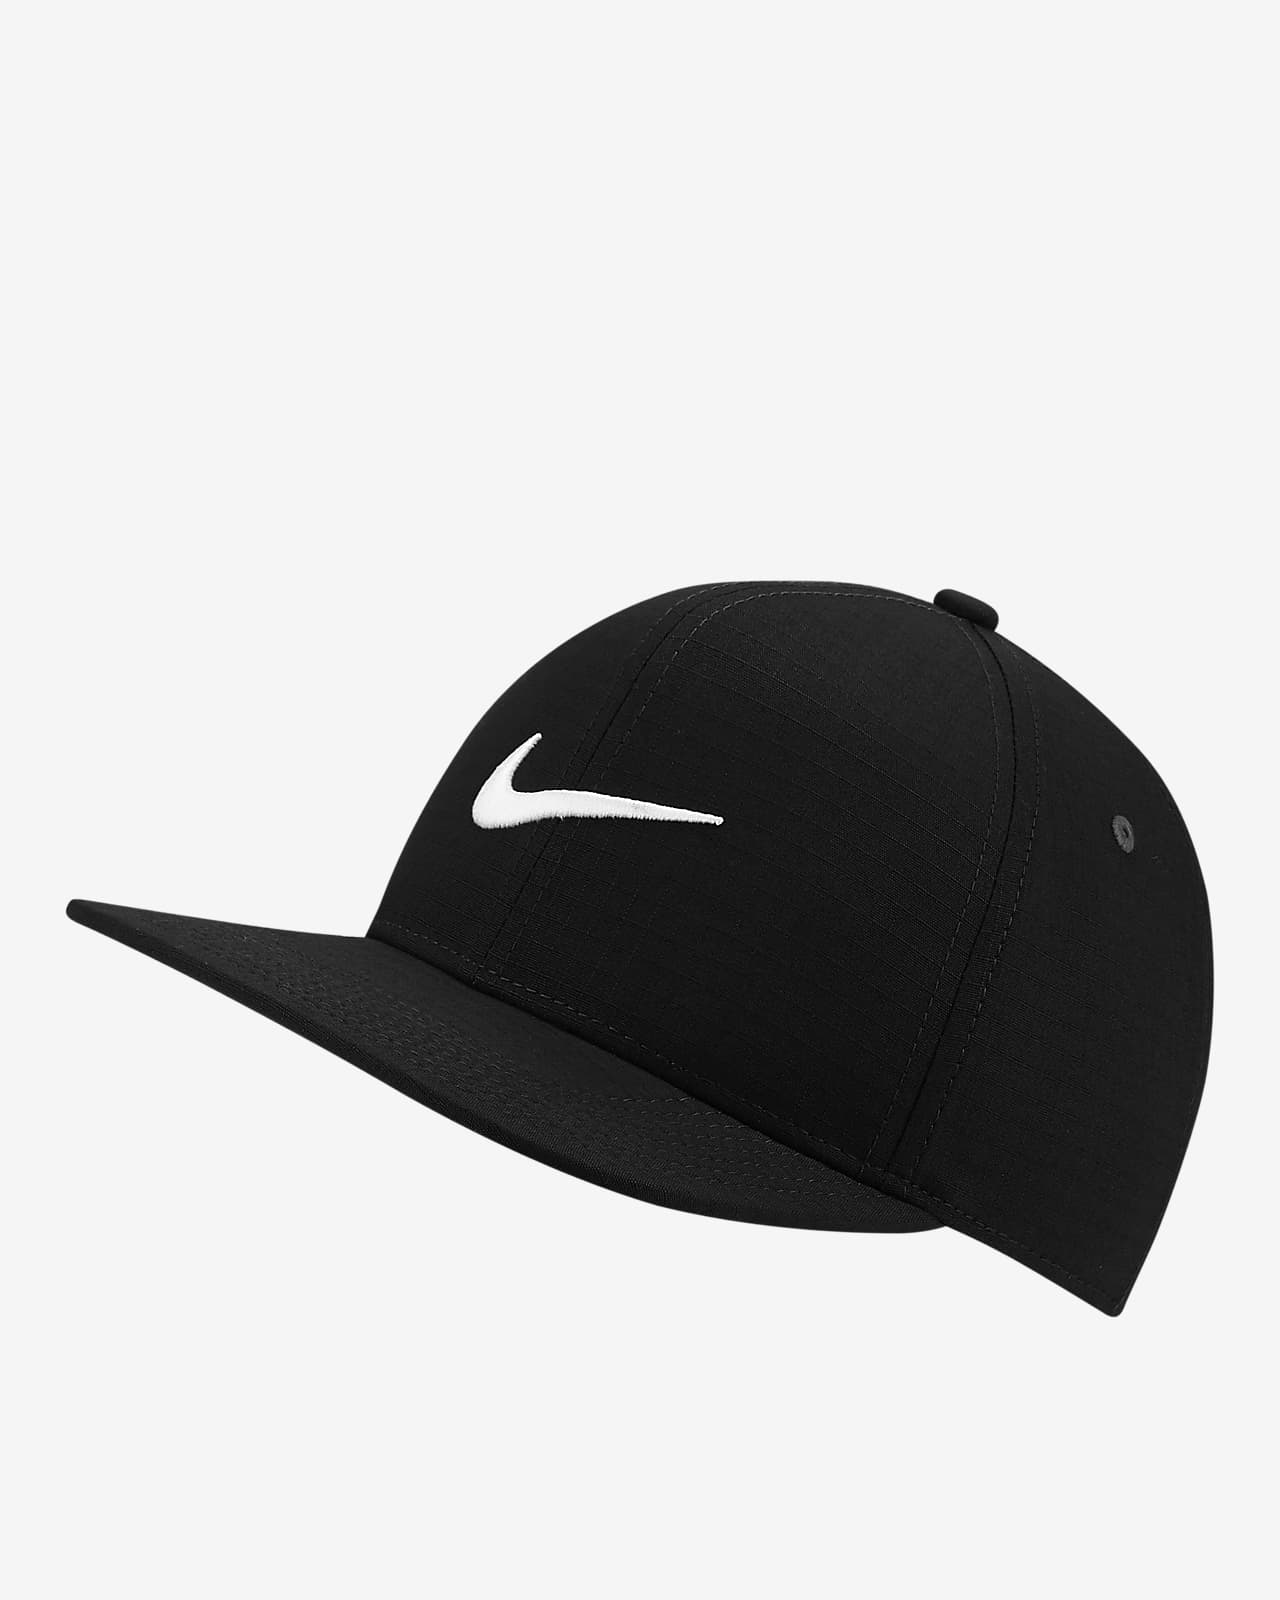 Golf Hats Visors And Caps Nike Com